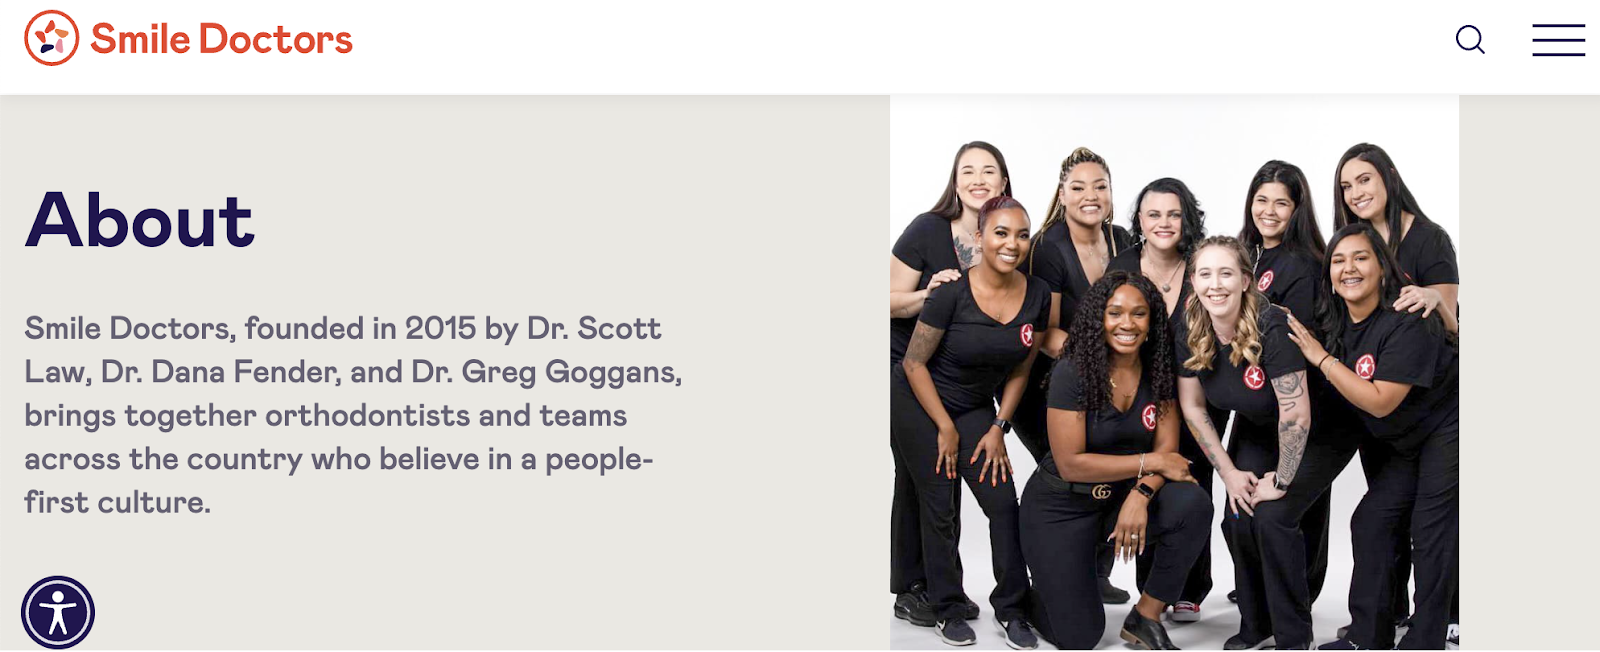 campañas de marketing dental, página de inicio de Smile Doctors